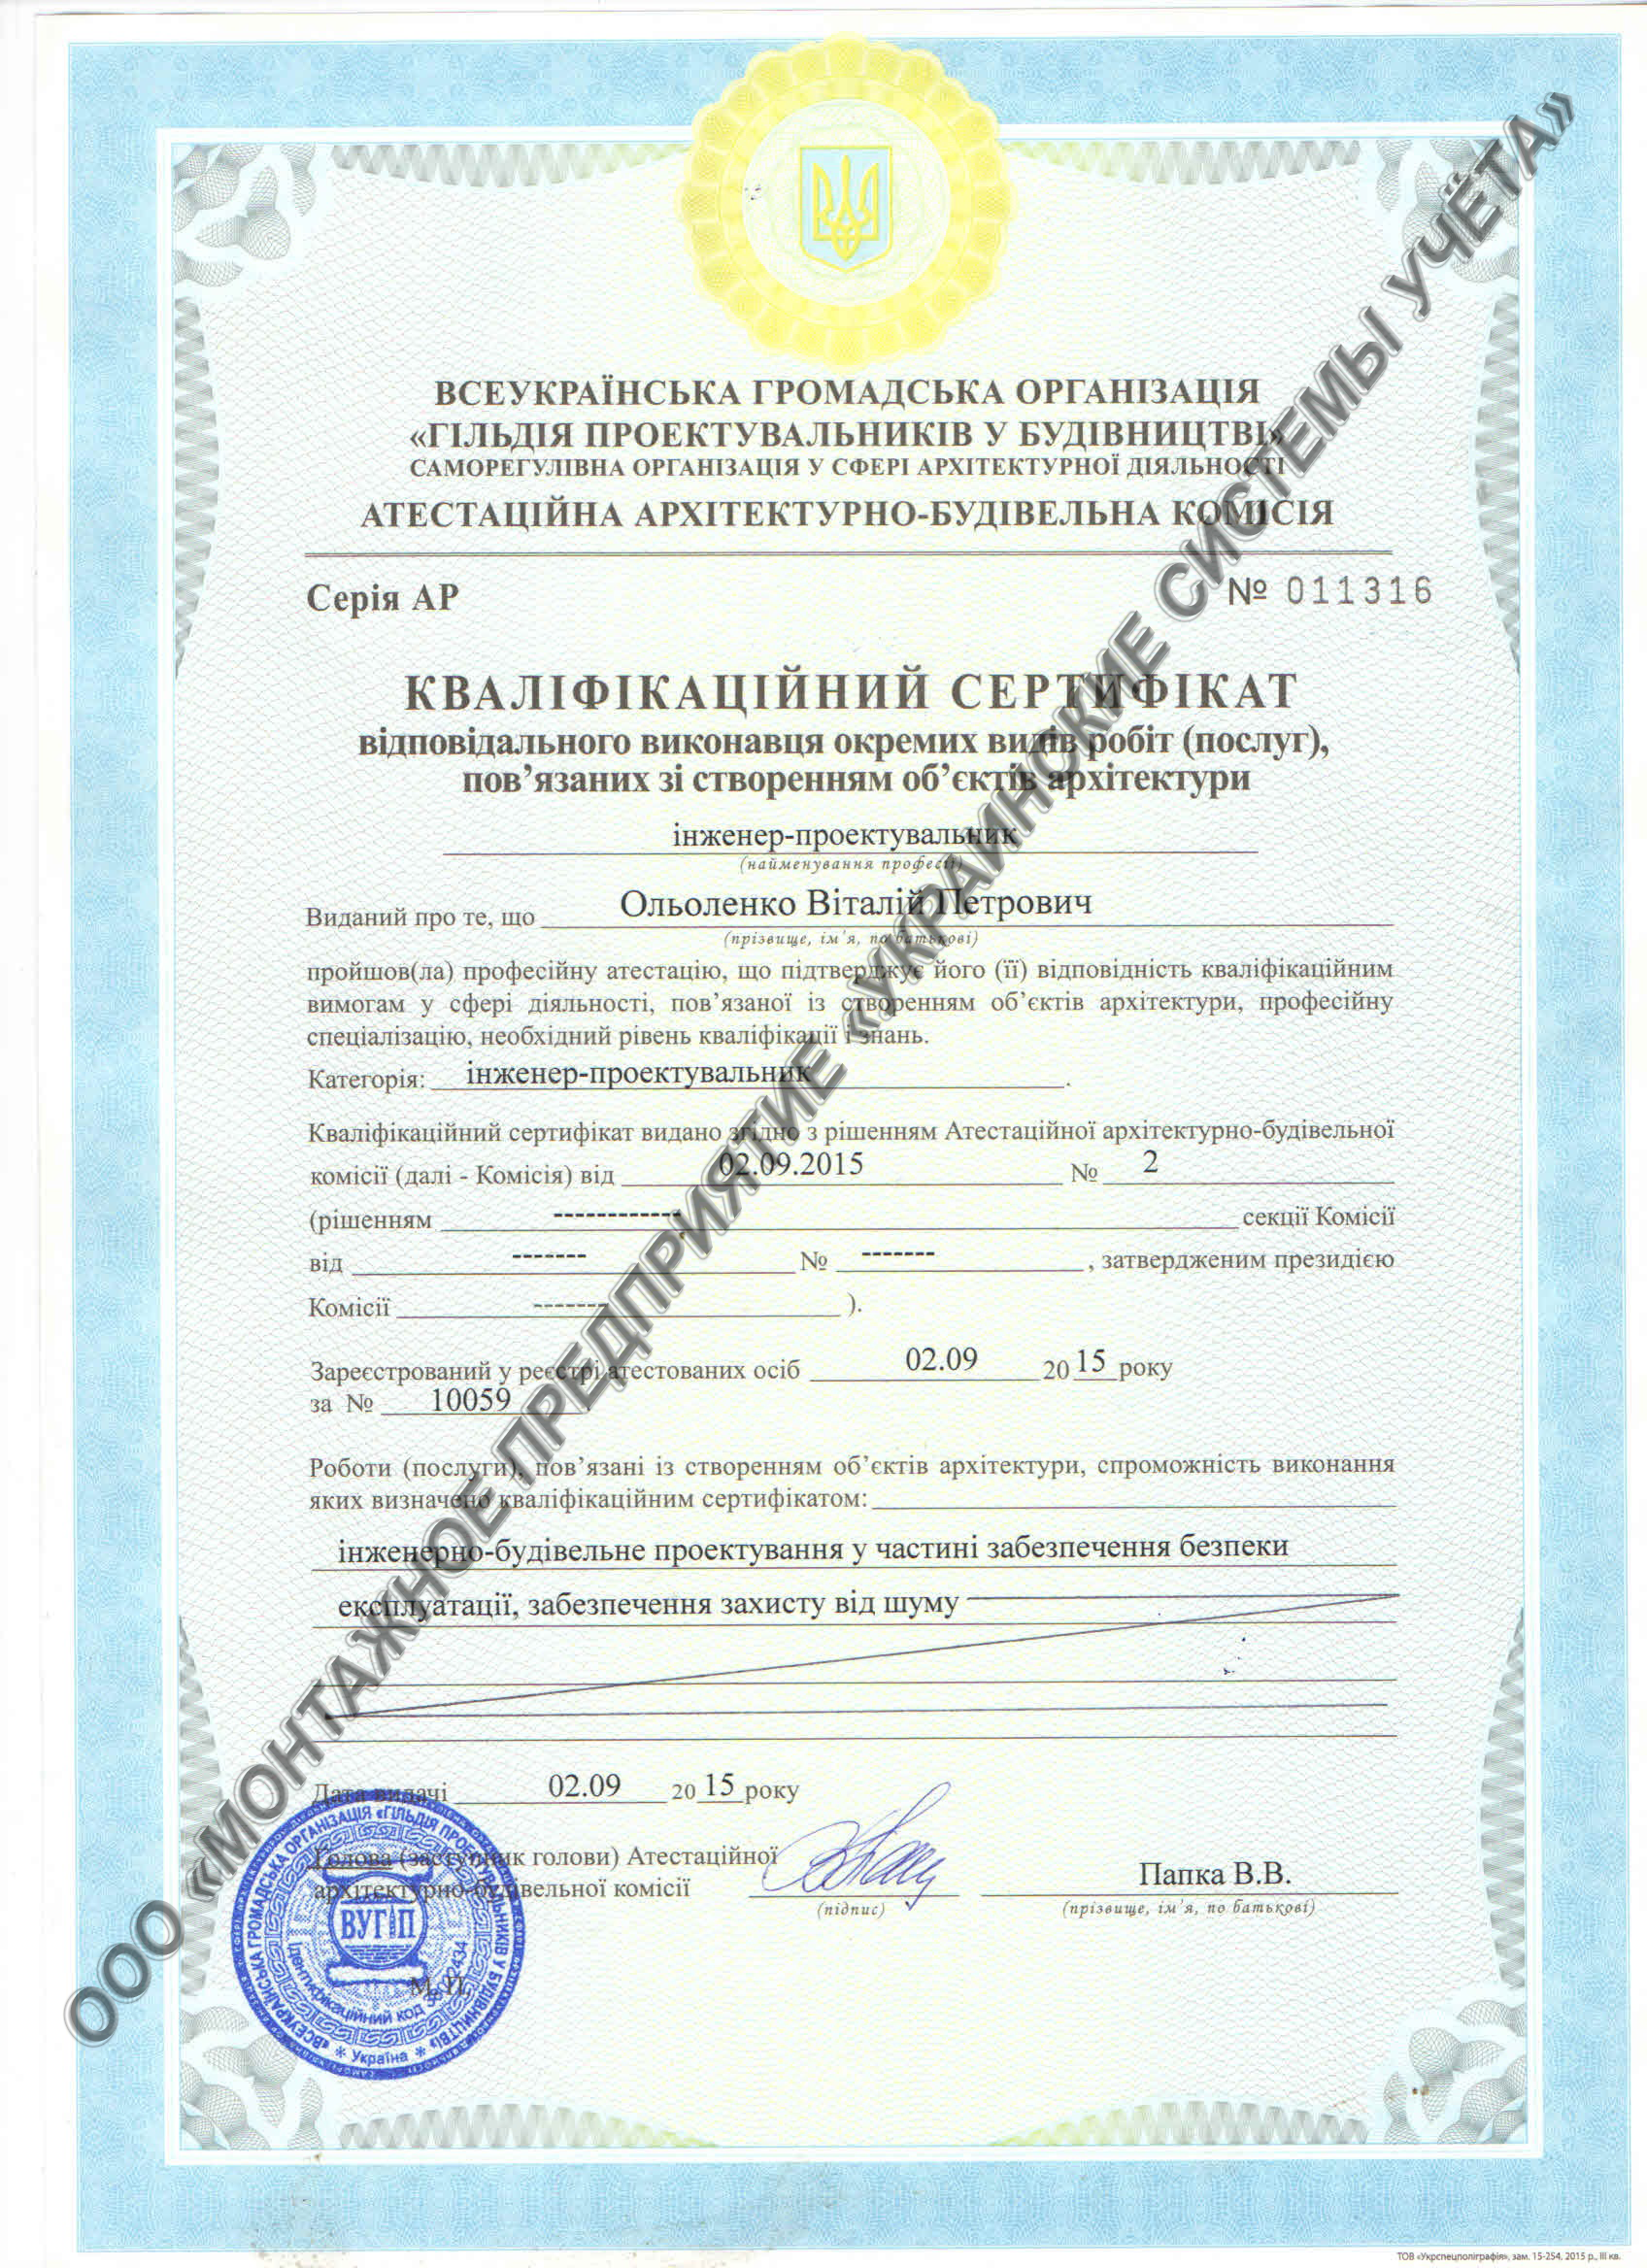  Сертификат ГИП